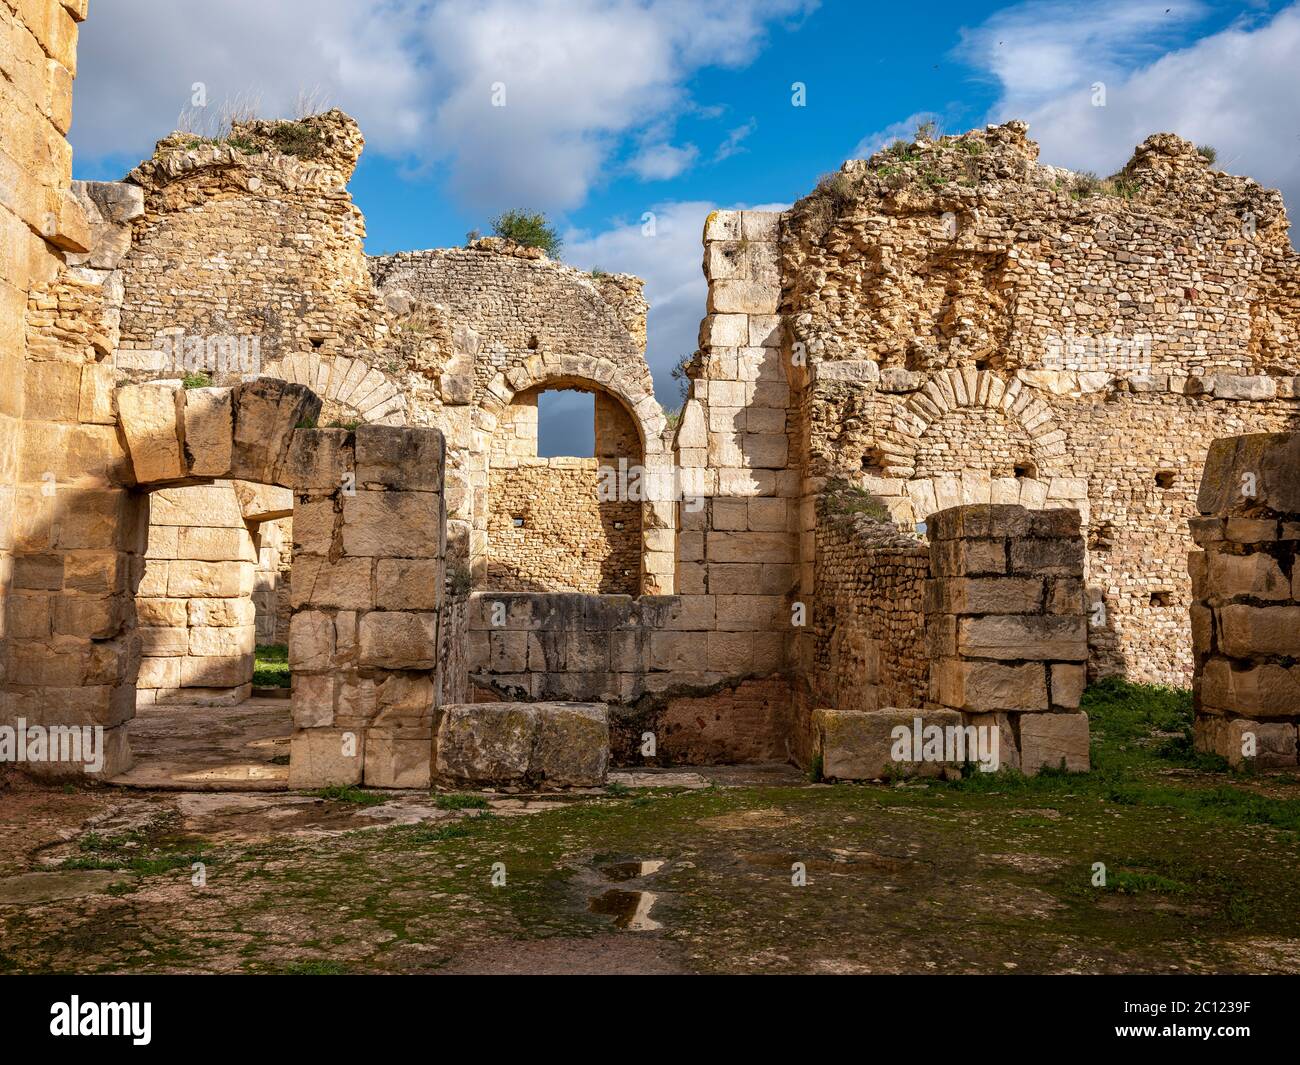 Die archäologische Stätte von Bulla Regia, Tunesien, bekannt für römische Ruinen der Hadrian-Ära unterirdischer Gehäuse als ein Mittel zum Schutz vor der heißen Sonne. Stockfoto